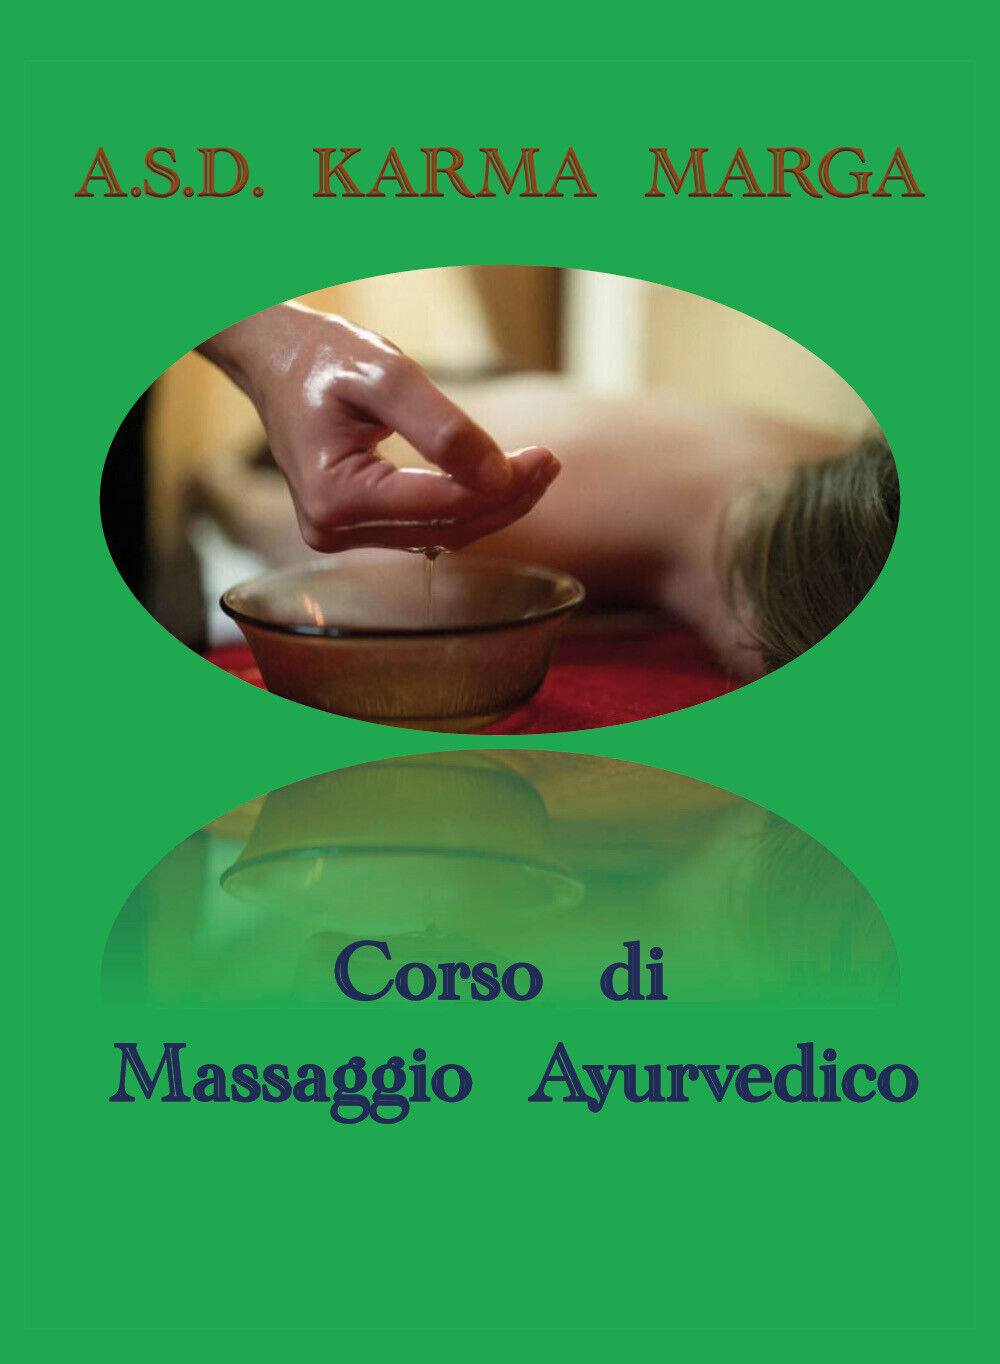 Corso di massaggio ayurvedico di A.s.d. Karma Marga,  2019,  Youcanprint